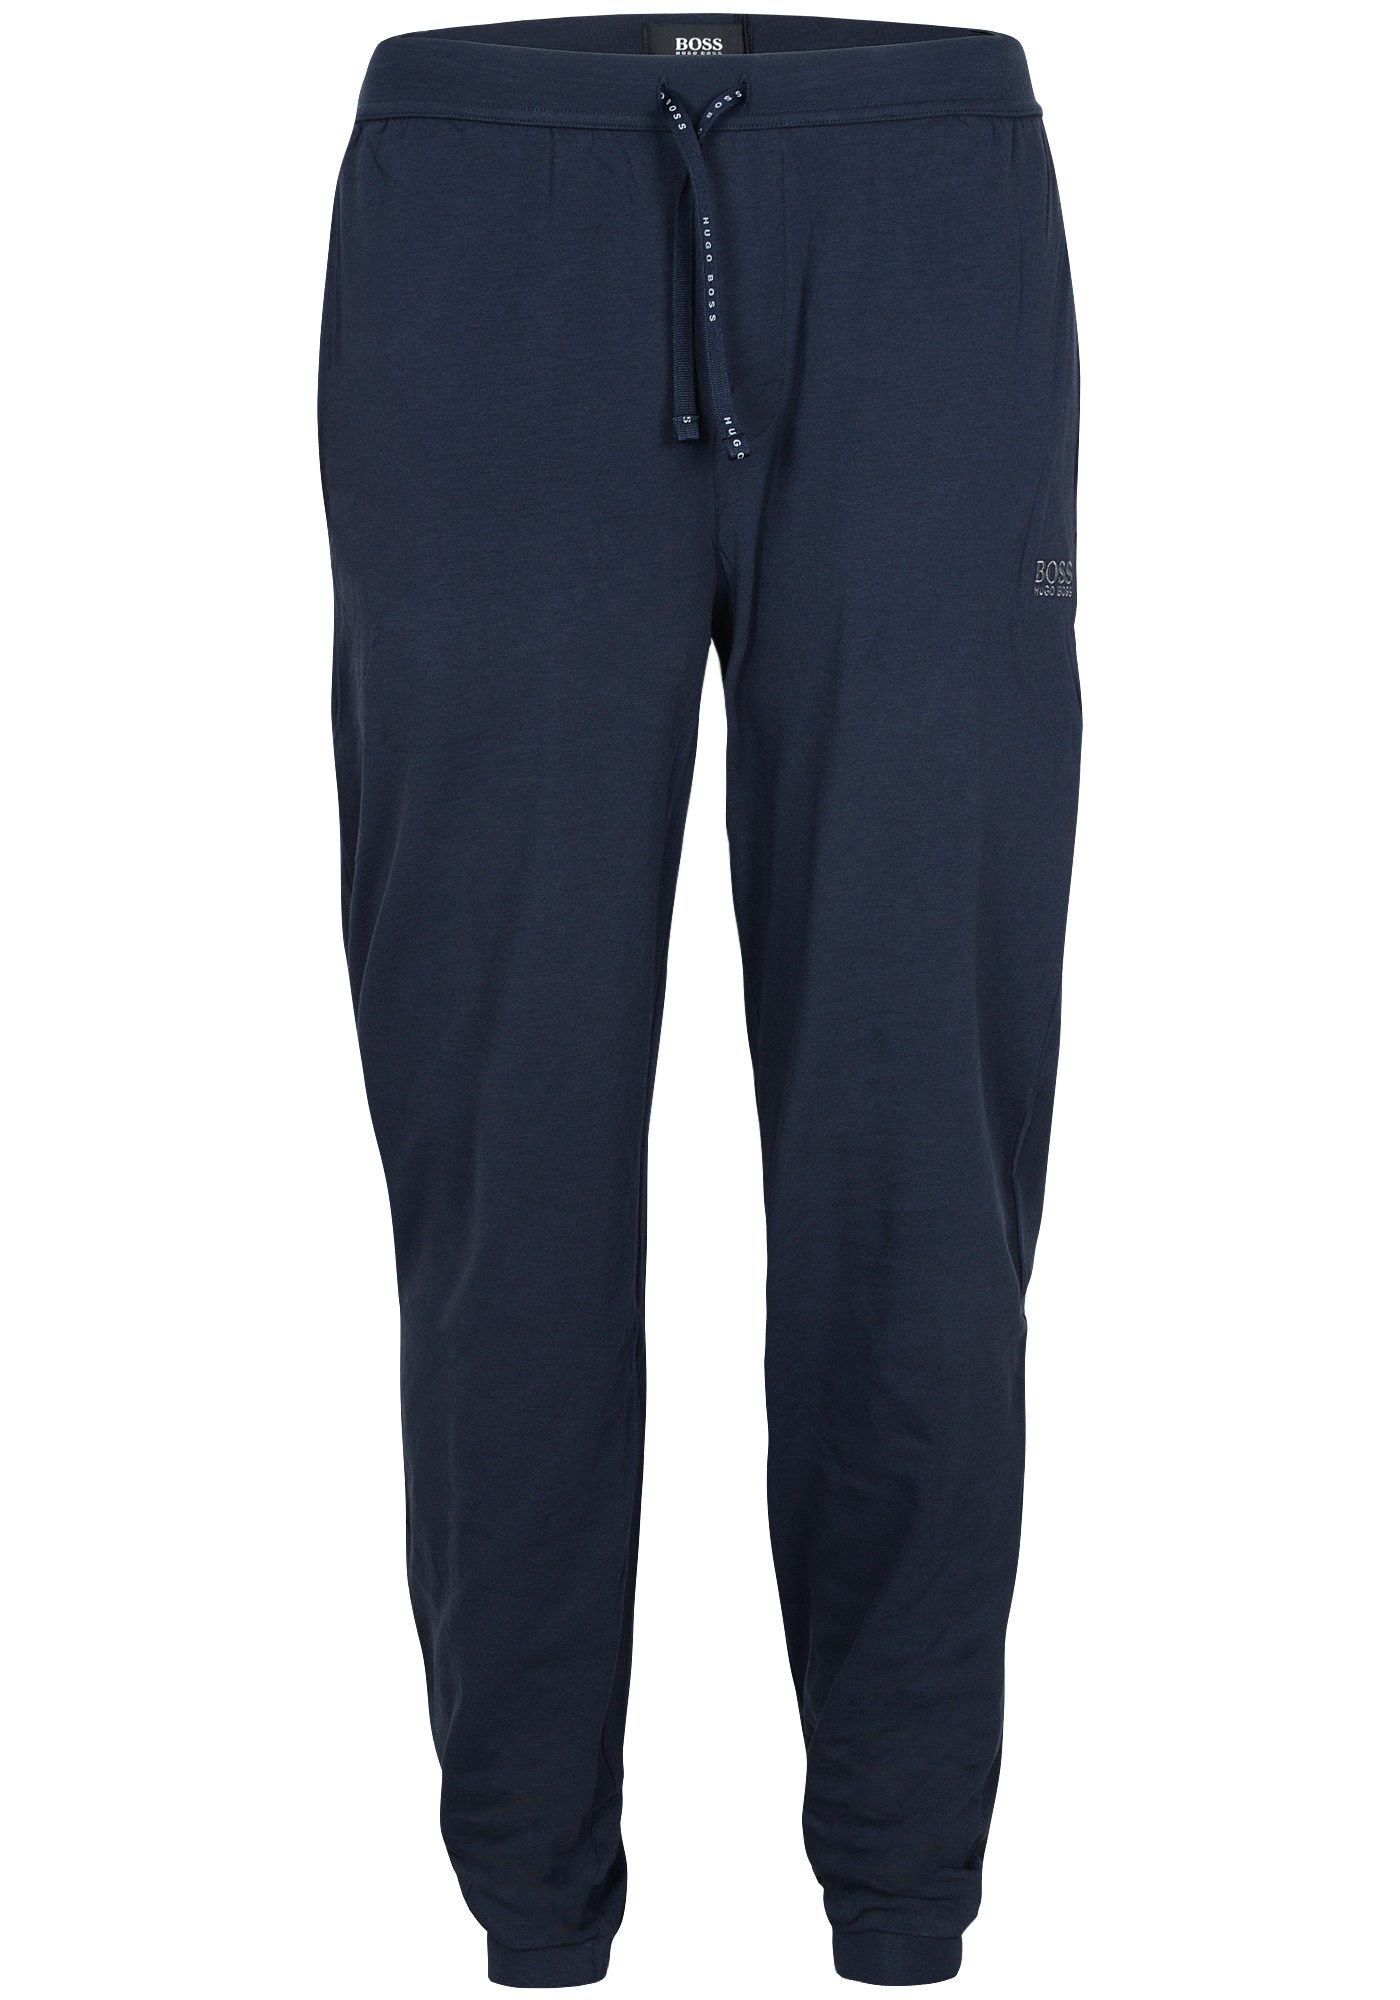 HUGO BOSS heren lounge broek (dun), Mix en Match pants, donkerblauw